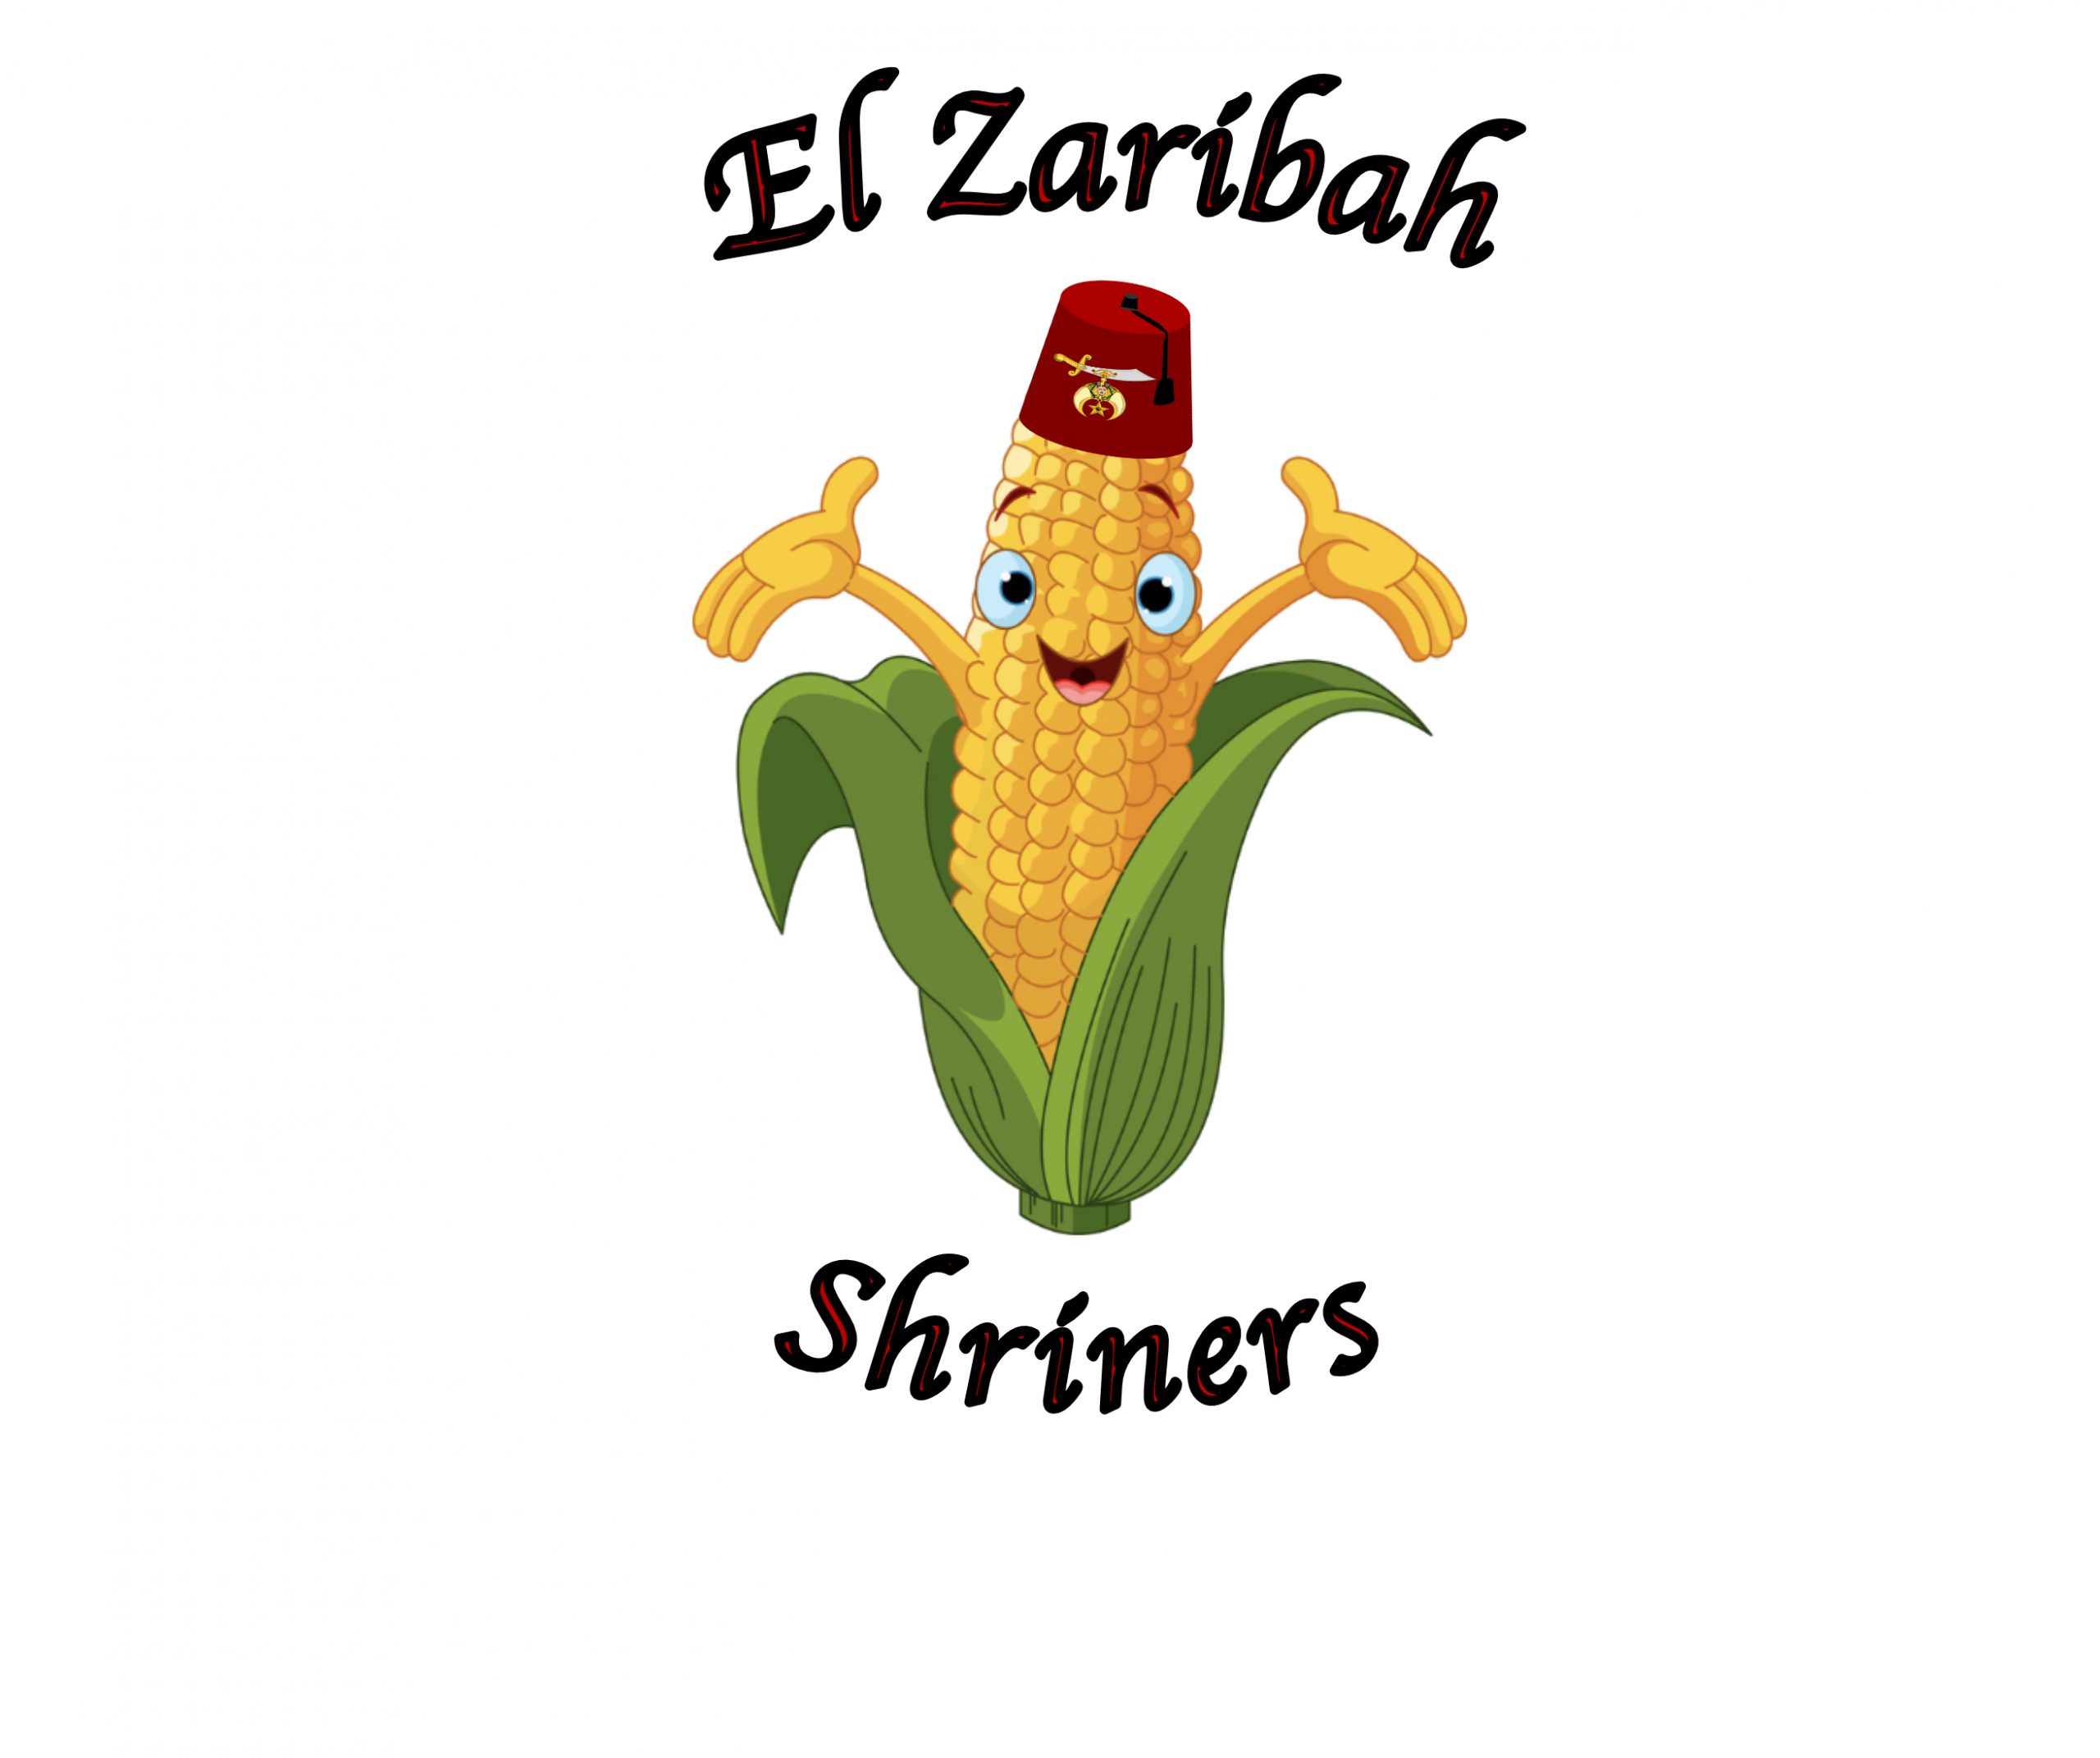 El zaribah shrine cornfest